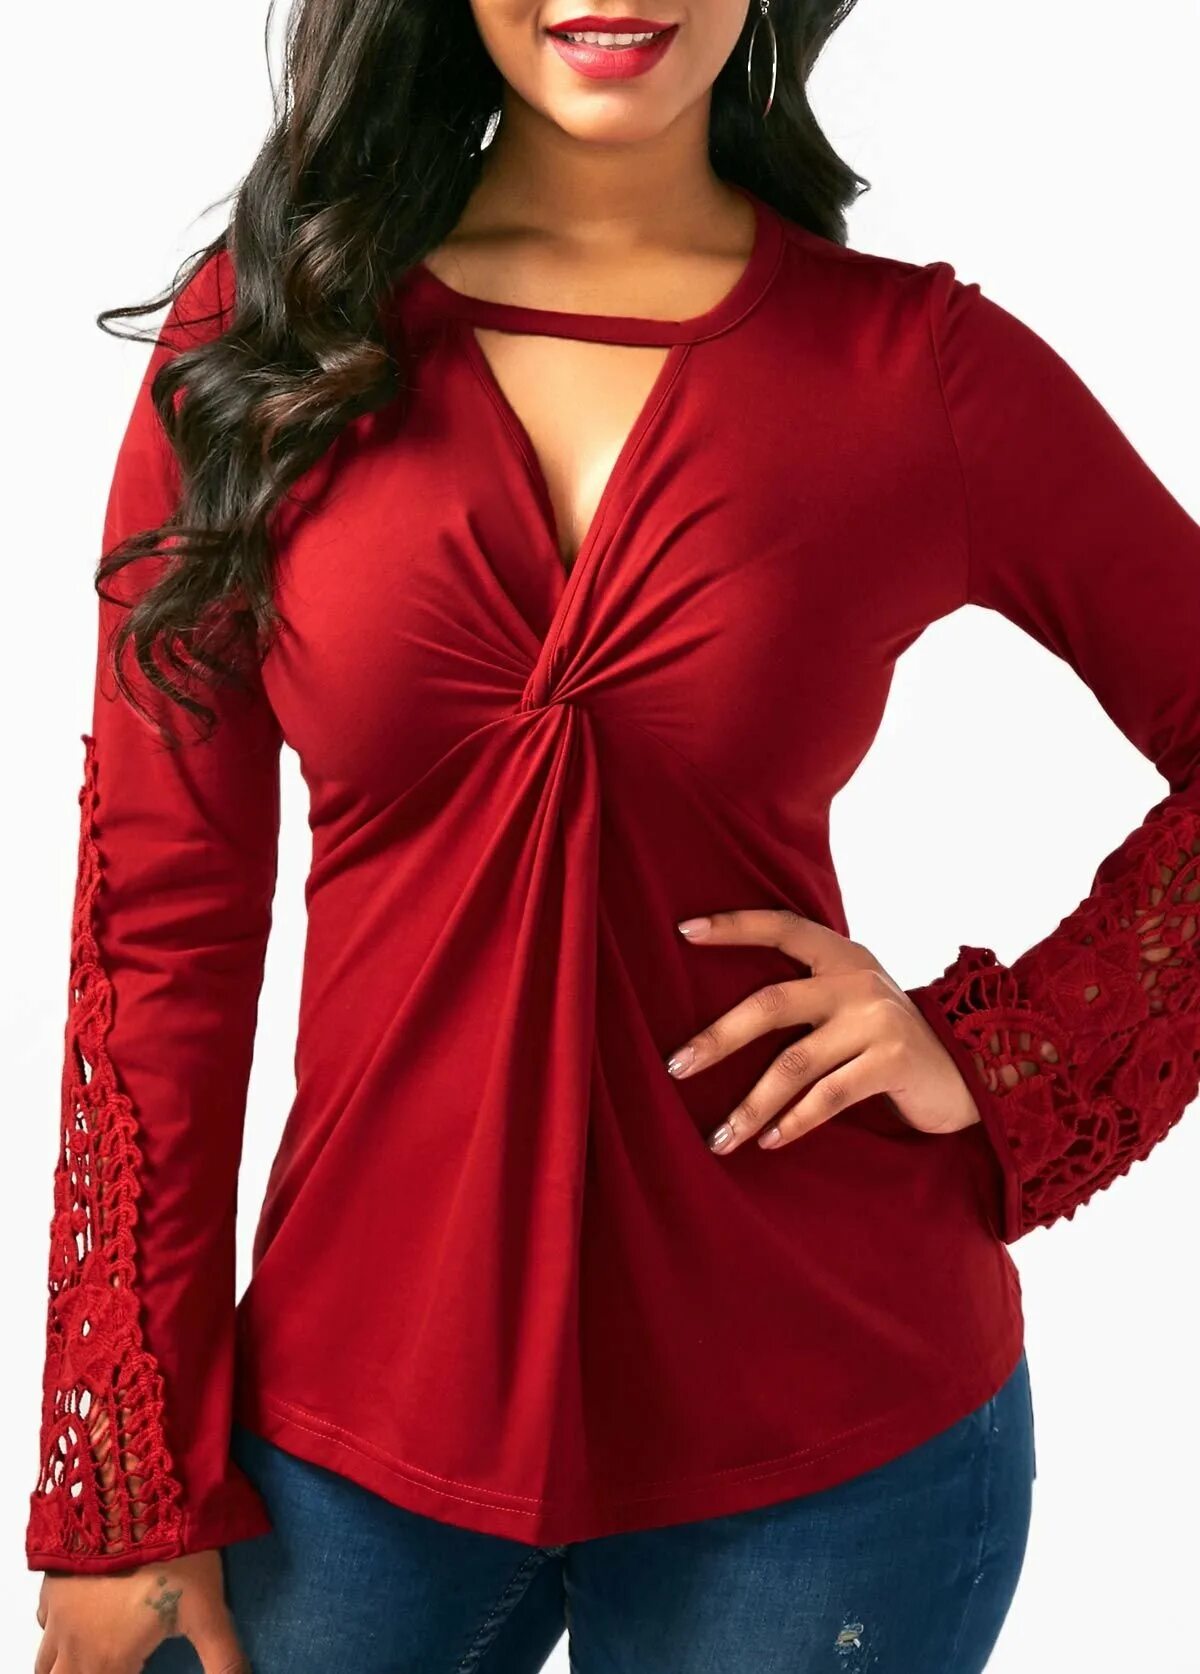 Красная блузка. Блуза из бархата. Блуза женская красная. Красная длинная кофта. Купить красную кофту